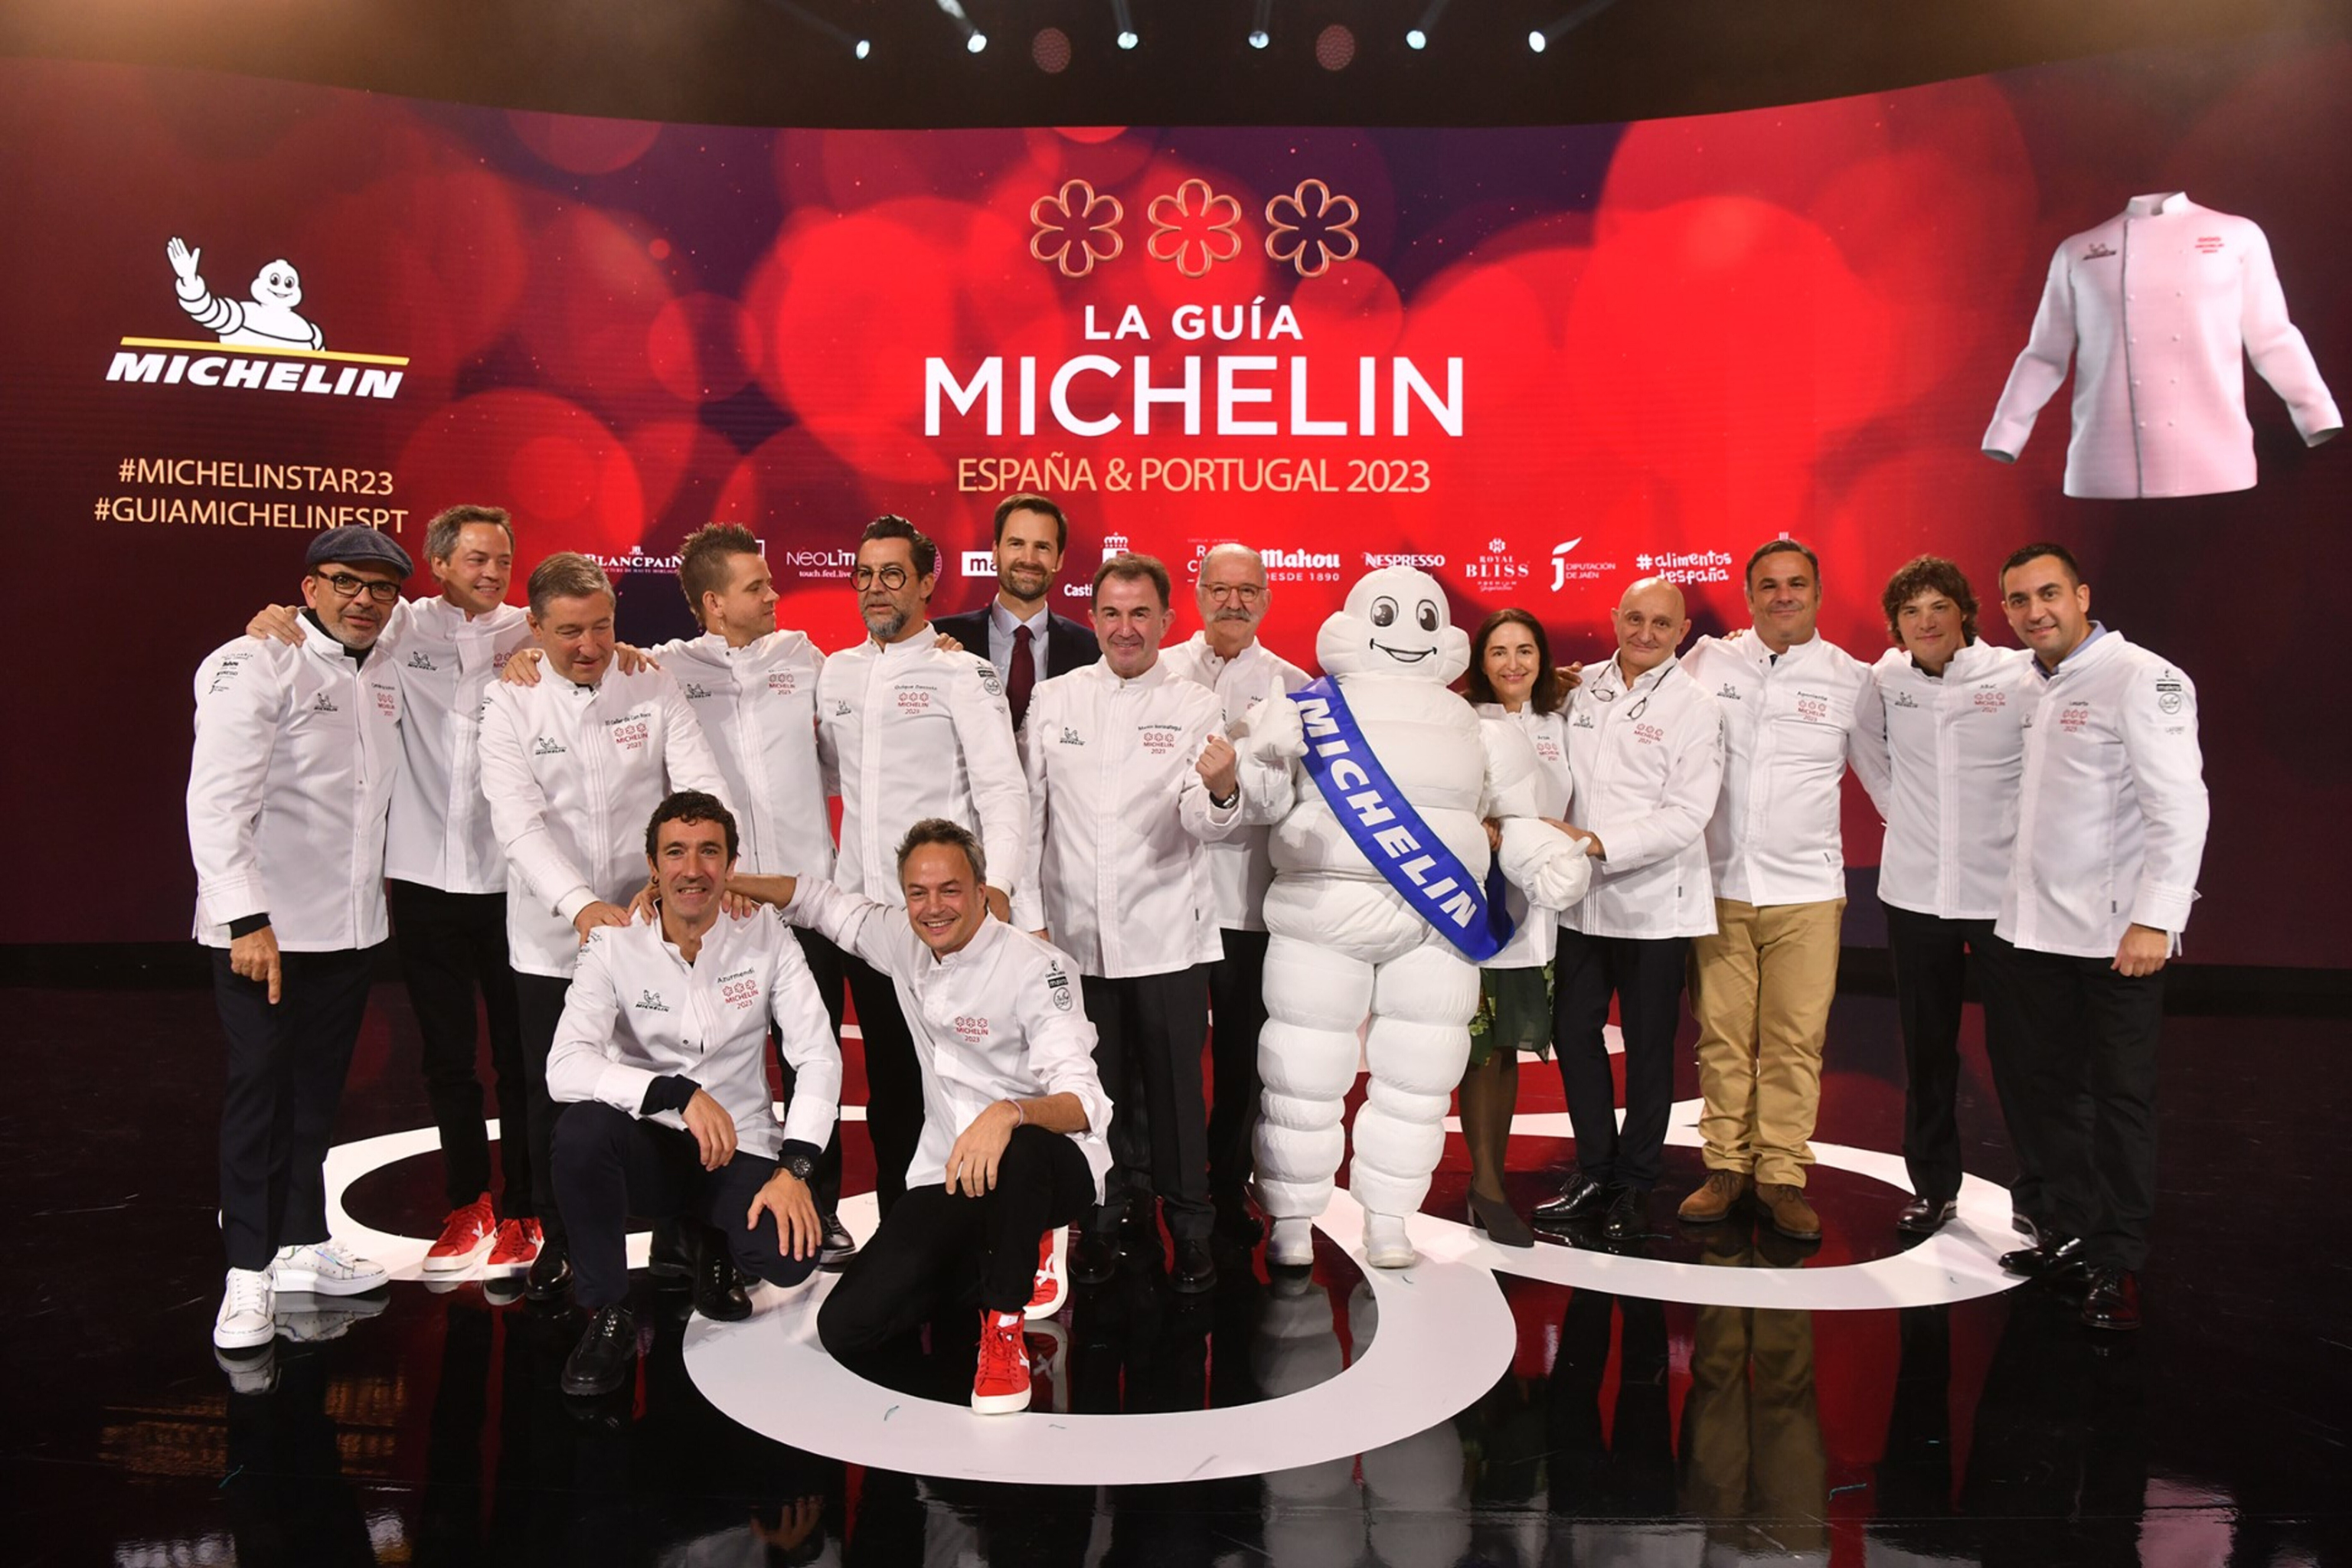 Los 13 cocineros con tres estrellas Michelín en la gala de 2023 en Toledo.